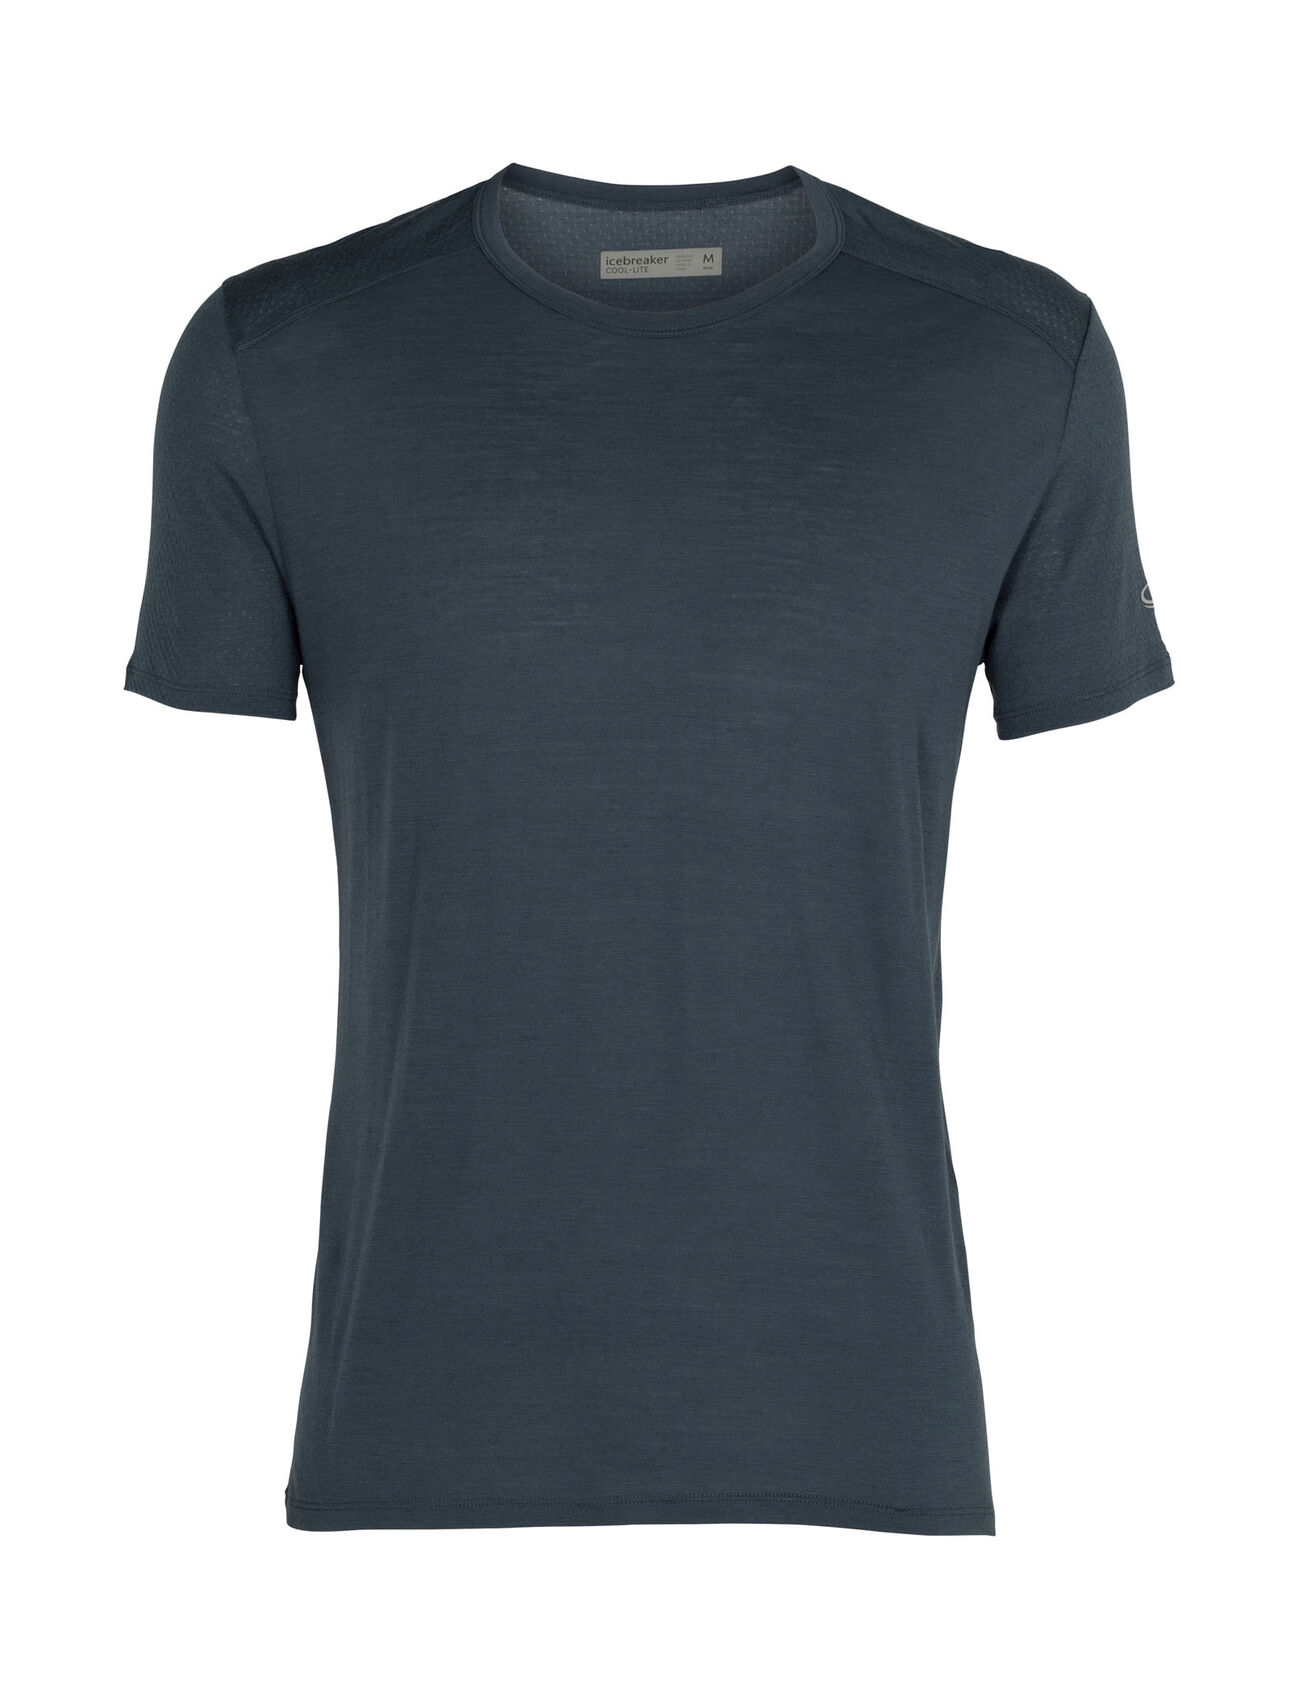 Cool-Lite™ Amplify kortärmad t-shirt i merino med rund halsringning